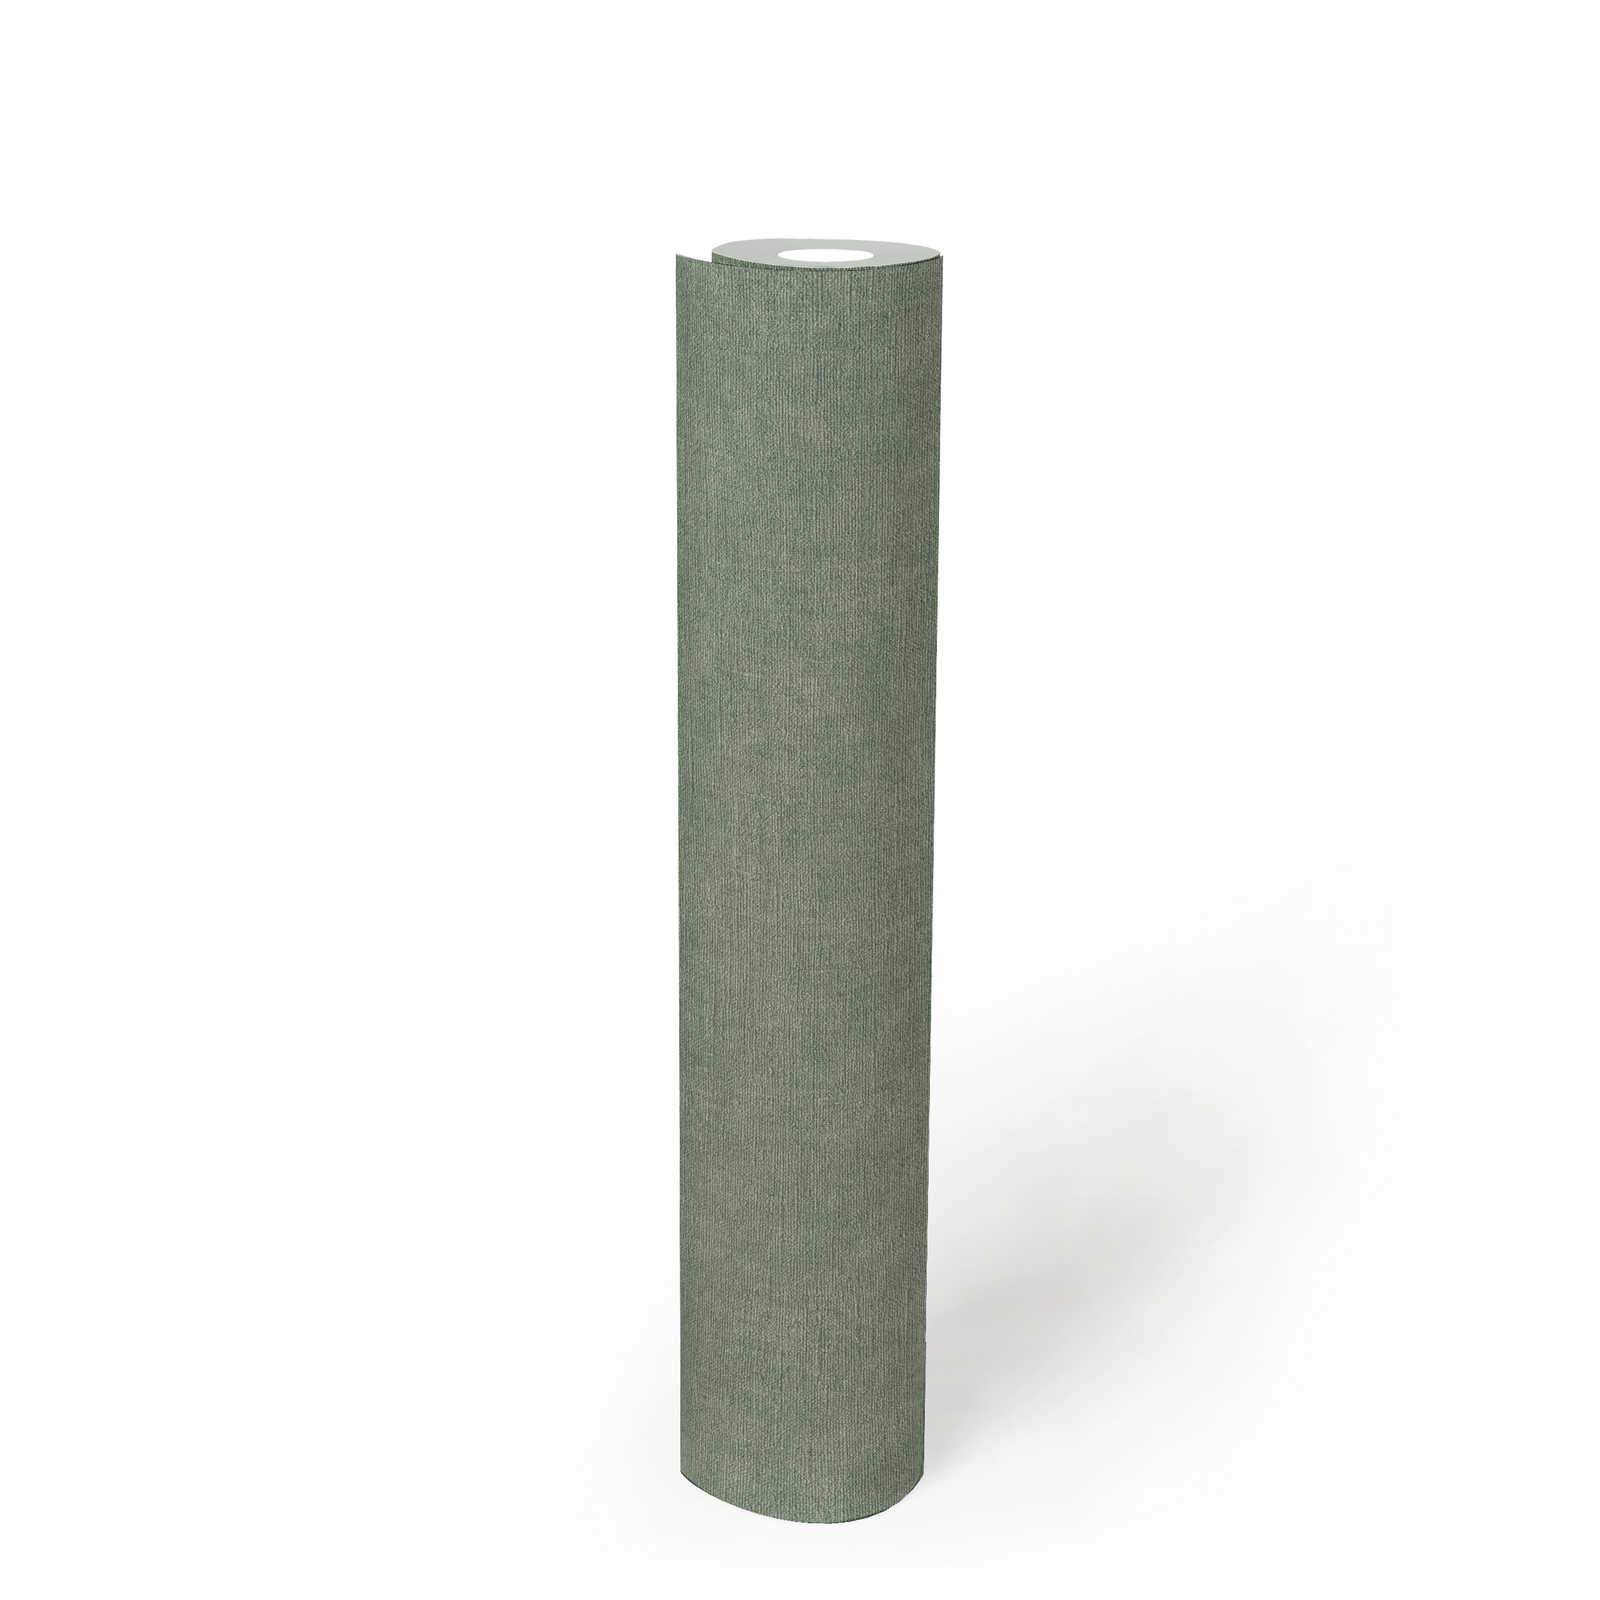             Carta da parati a tessitura leggera in look tessile - verde, grigio
        